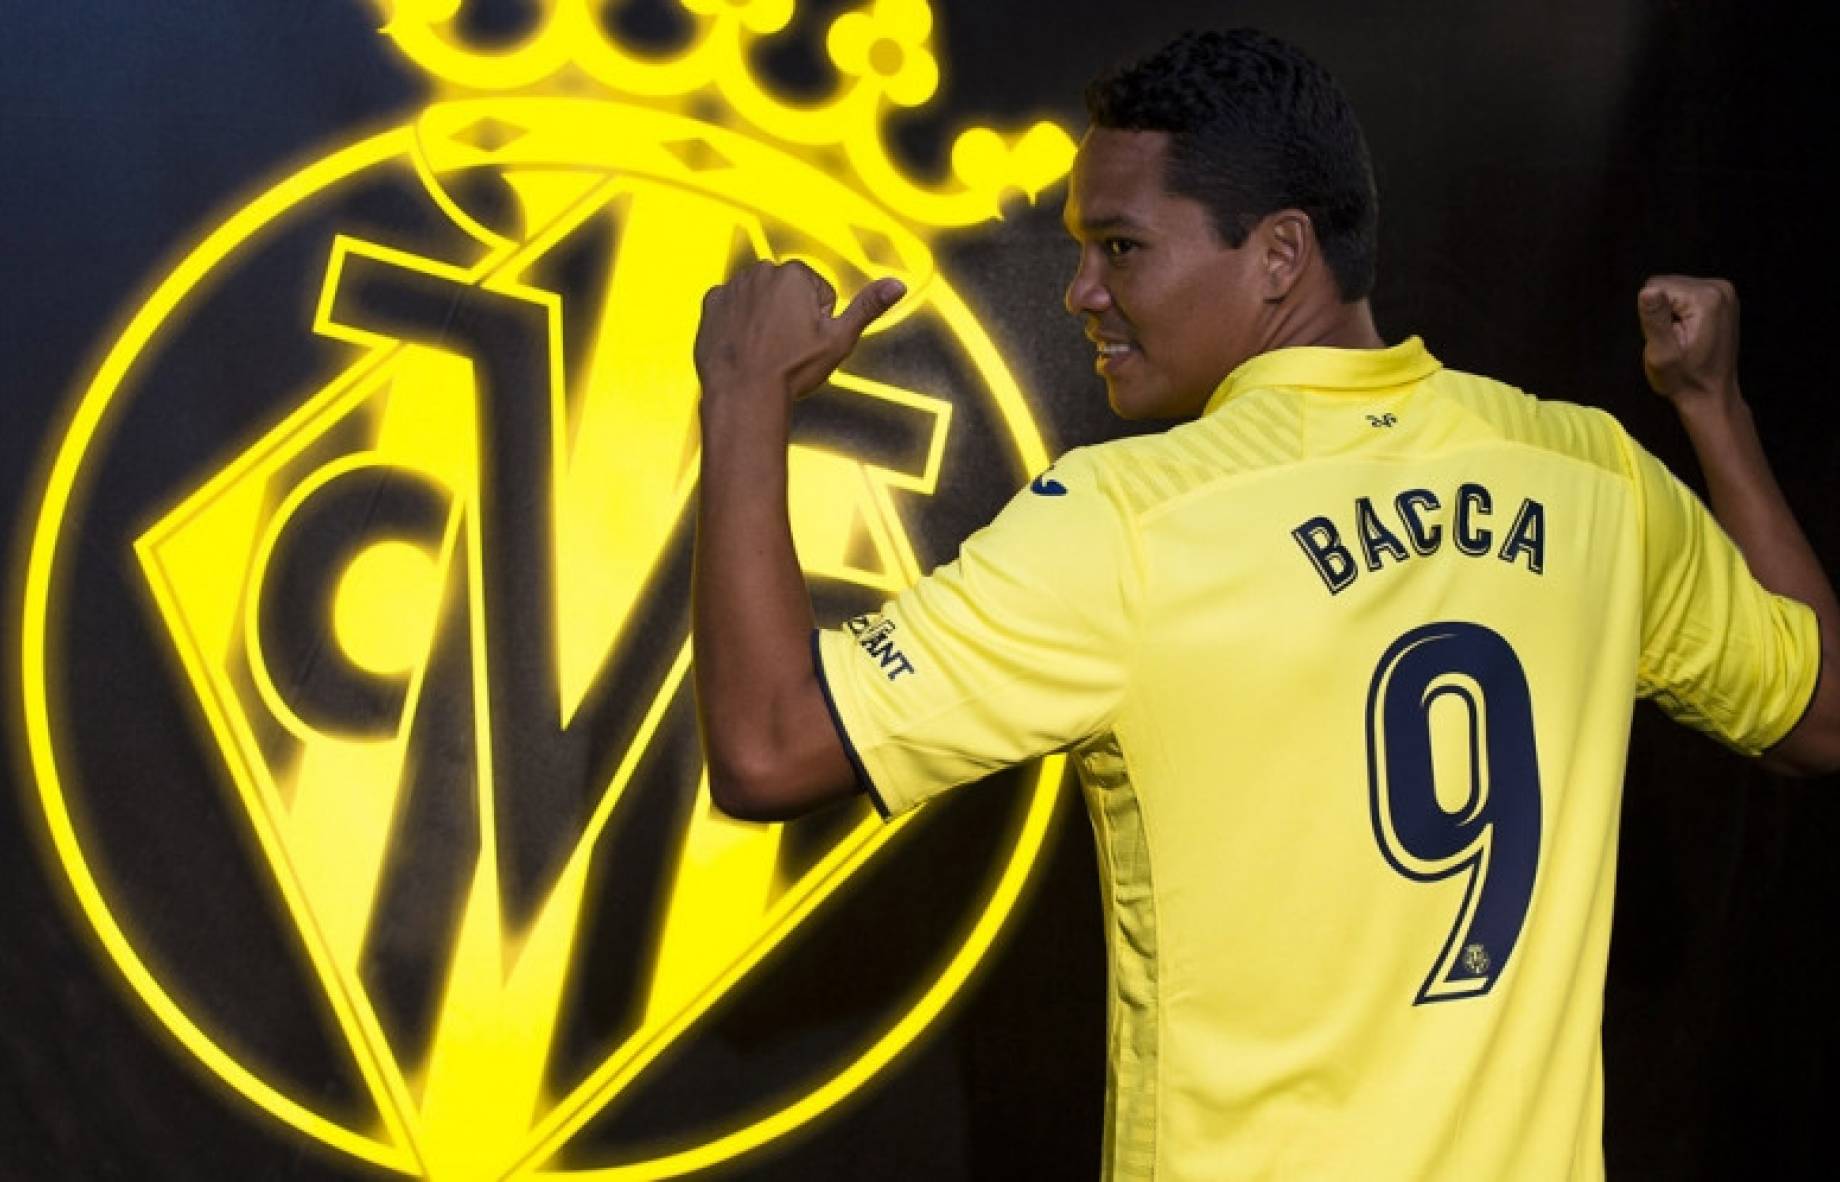 Zabava uže sferni  Liga, Bacca:”I want to stay at Villareal for many years”